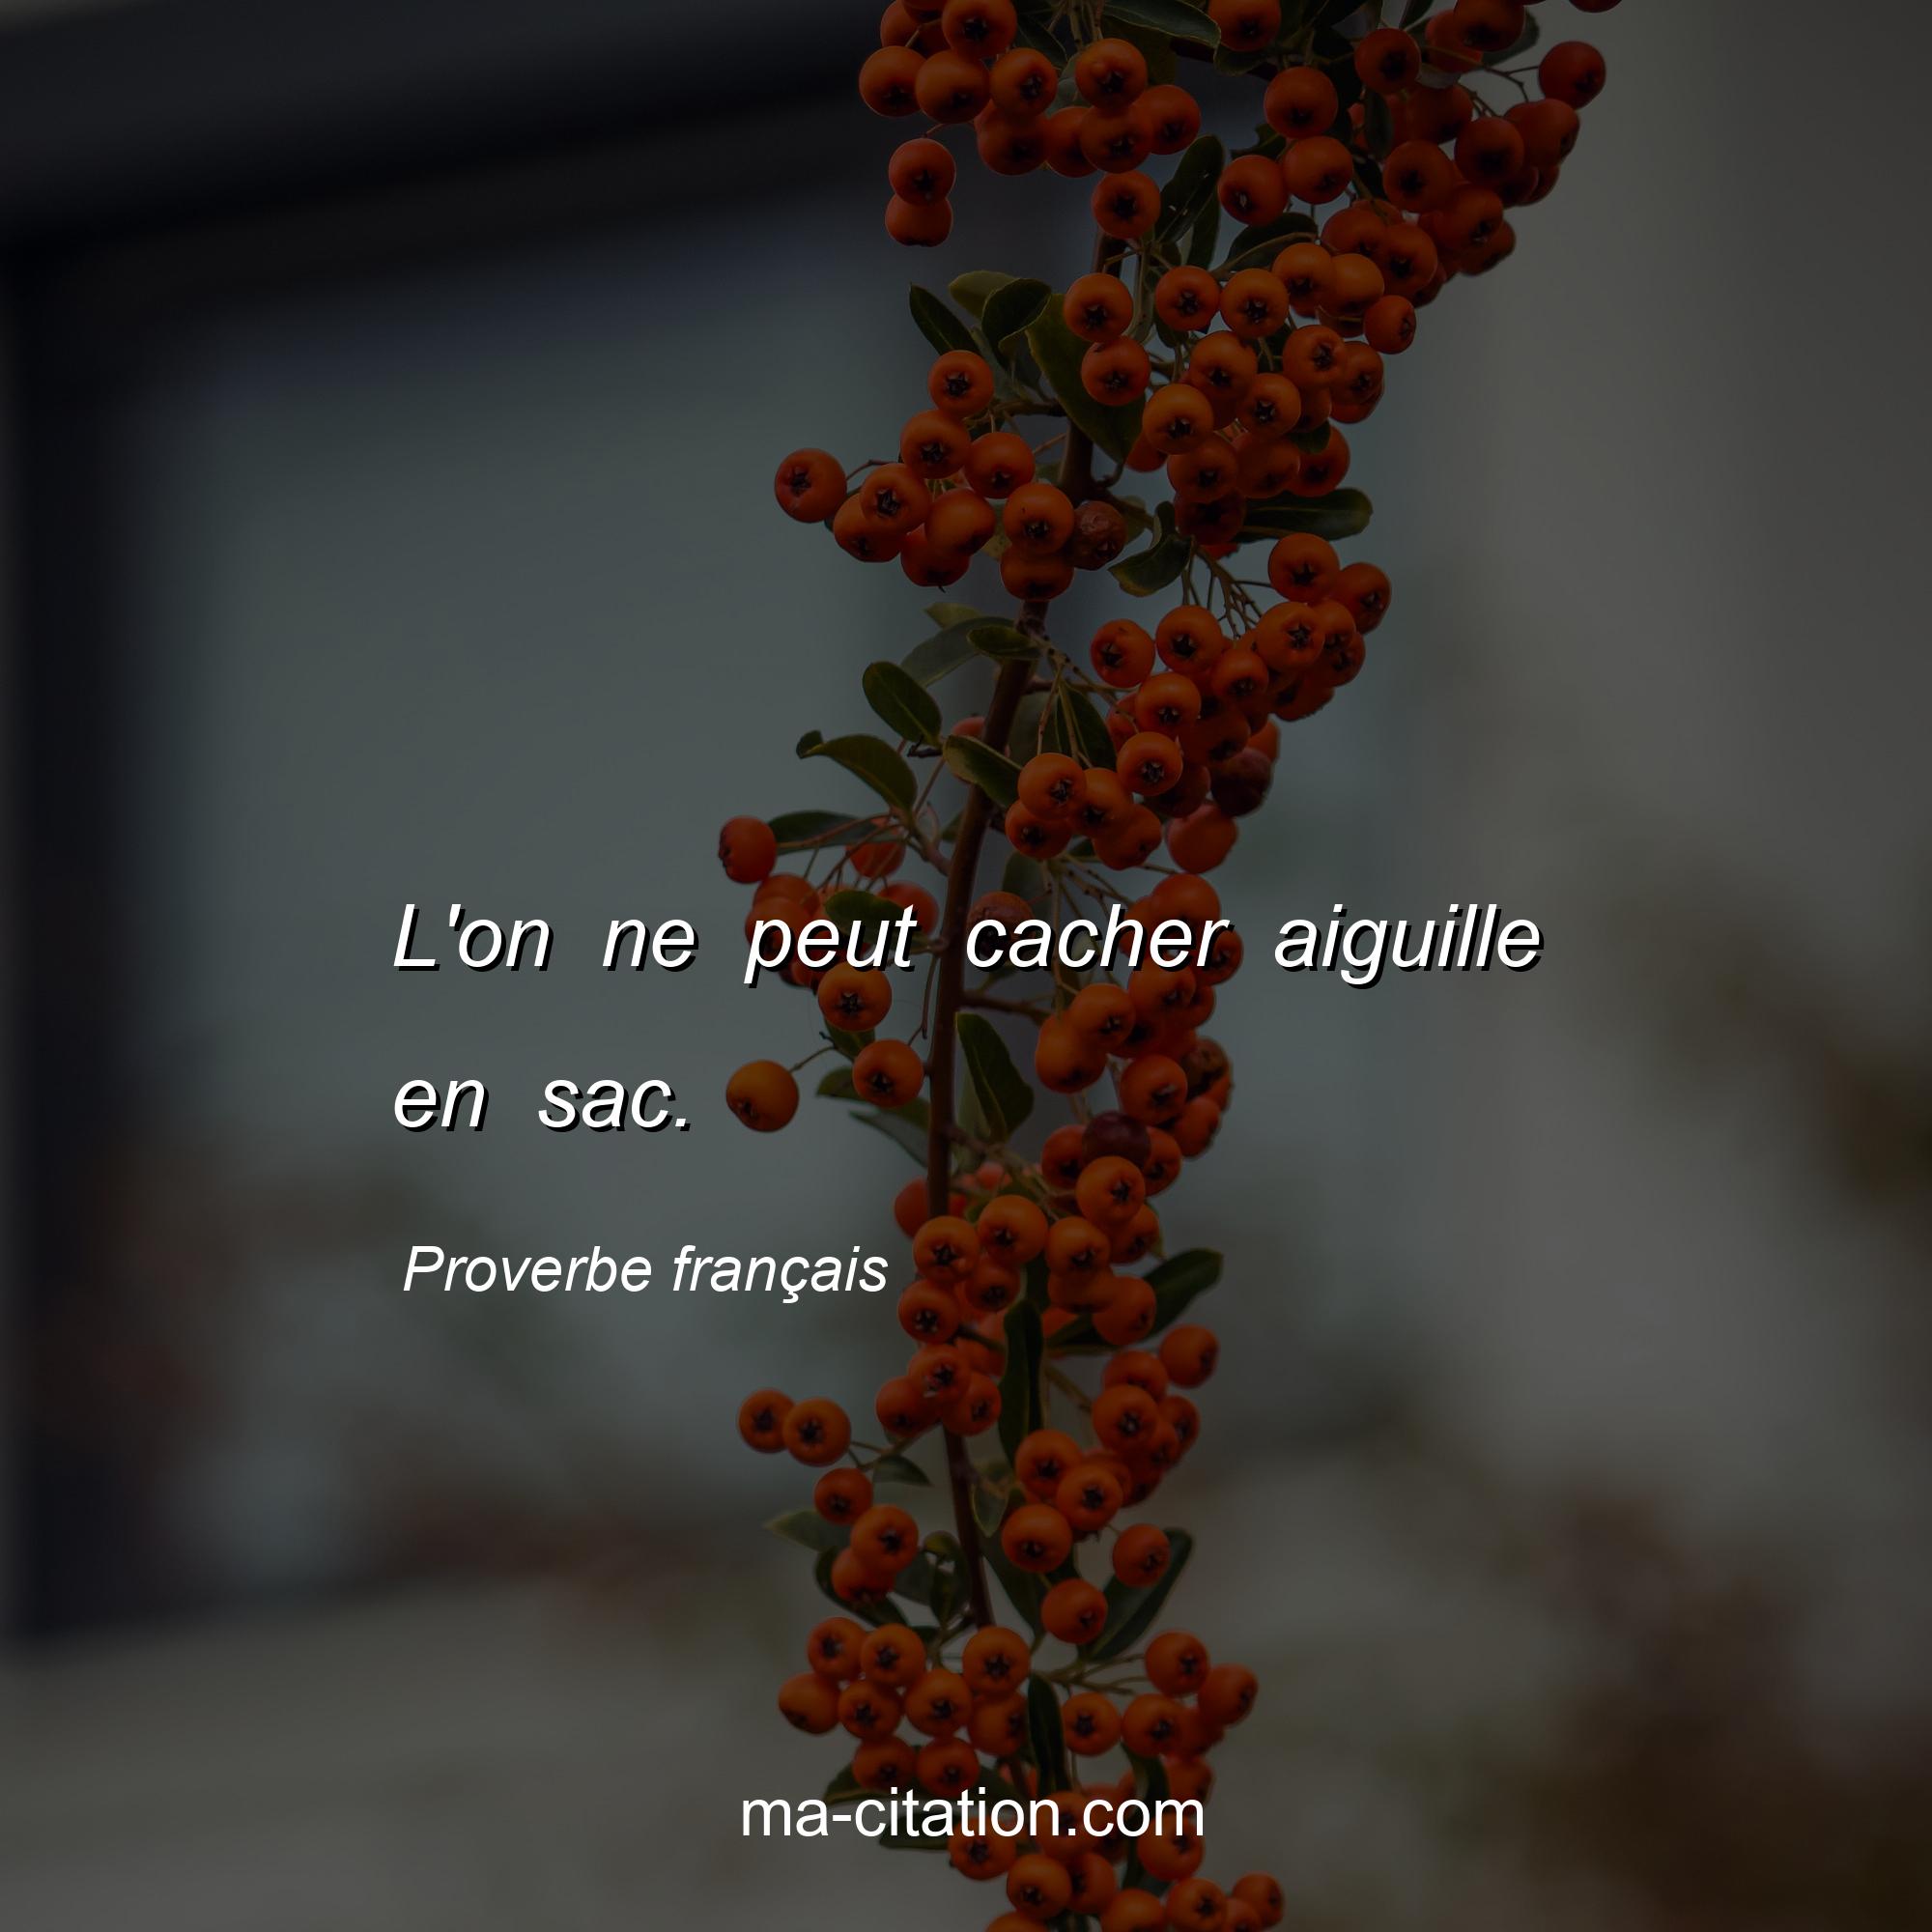 Proverbe français : L'on ne peut cacher aiguille en sac.